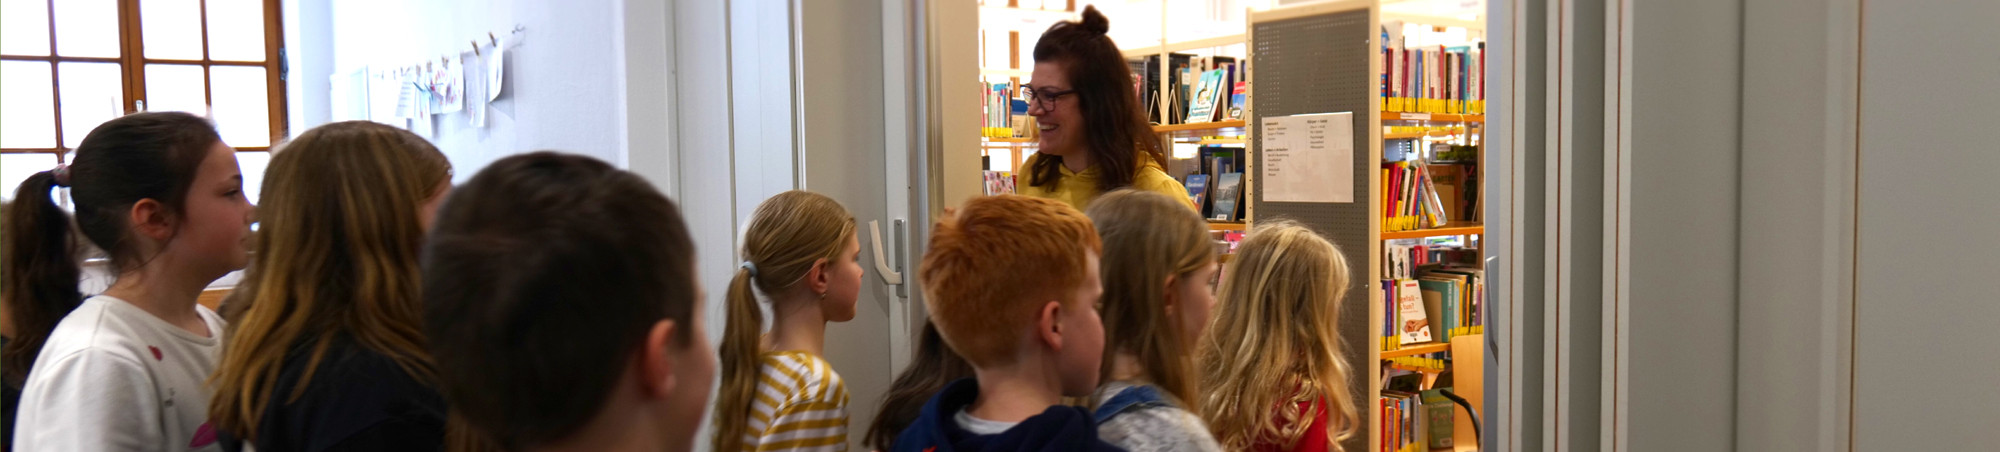 Kinder gehen durch die Schiebetür, die die Bibliothekarin geöffnet hat.